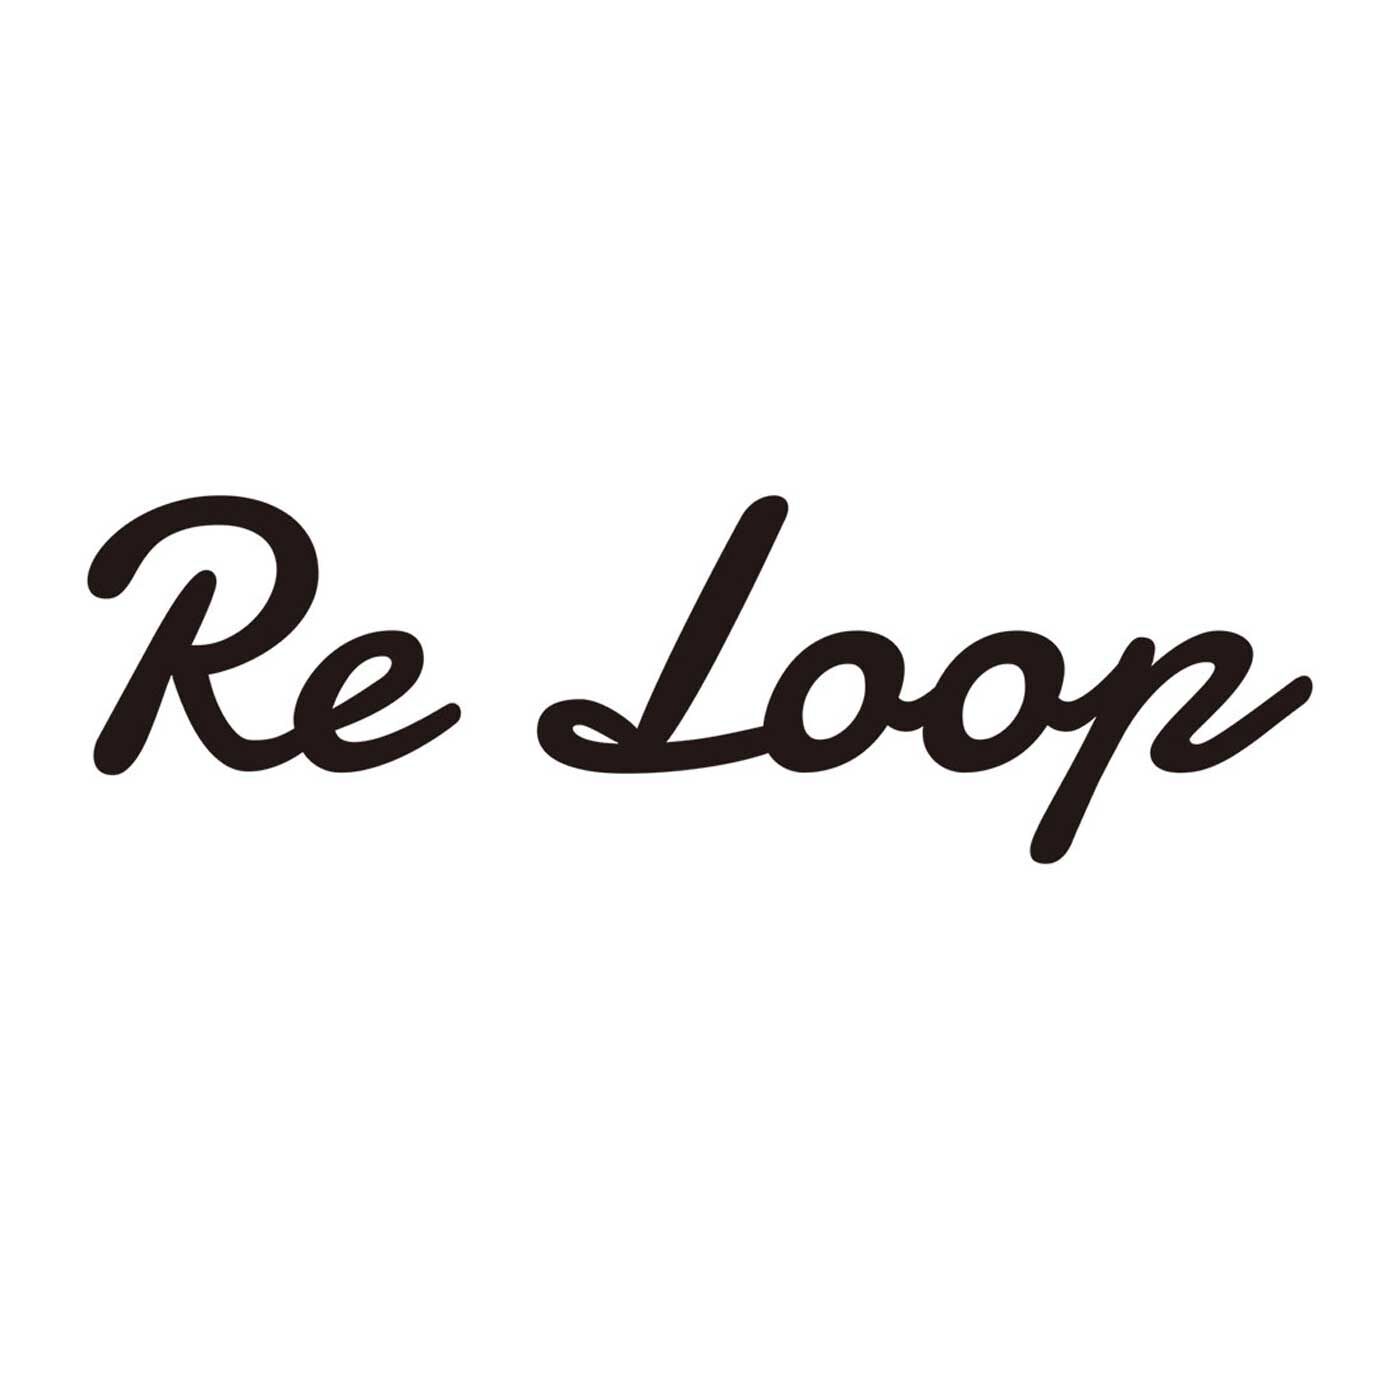 フェリシモの雑貨 Kraso|ReLoop さらりと心地よいヘンプ混 ショート丈ソックス|【Re Loop】奈良の老舗靴下工場「SOUKI」のブランドです。人と環境にやさしい素材を使い、代々受け継がれてきた技術や知識を次世代に引き継ぐことを使命に生まれました。使用している「リサイクル糸」は、明治大正時代から続けられてきた技術をルーツとする、紡績方法でつくられたもの。未利用のまま廃棄される繊維原料や、紡績、織布工場で発生する糸くず、布地などを集めて綿にほぐしなおした原料を使用して、糸に紡いだもの。空気を多く含んでいるので、「ナチュラルなふくらみ」と「かさ高性」があります。そんなリサイクル糸を使い、希少な編み機でていねいに編み上げられた「Re Loop」の靴下は、ちょっぴり特別。それでいて毎日履くのにぴったりの相棒的存在です。